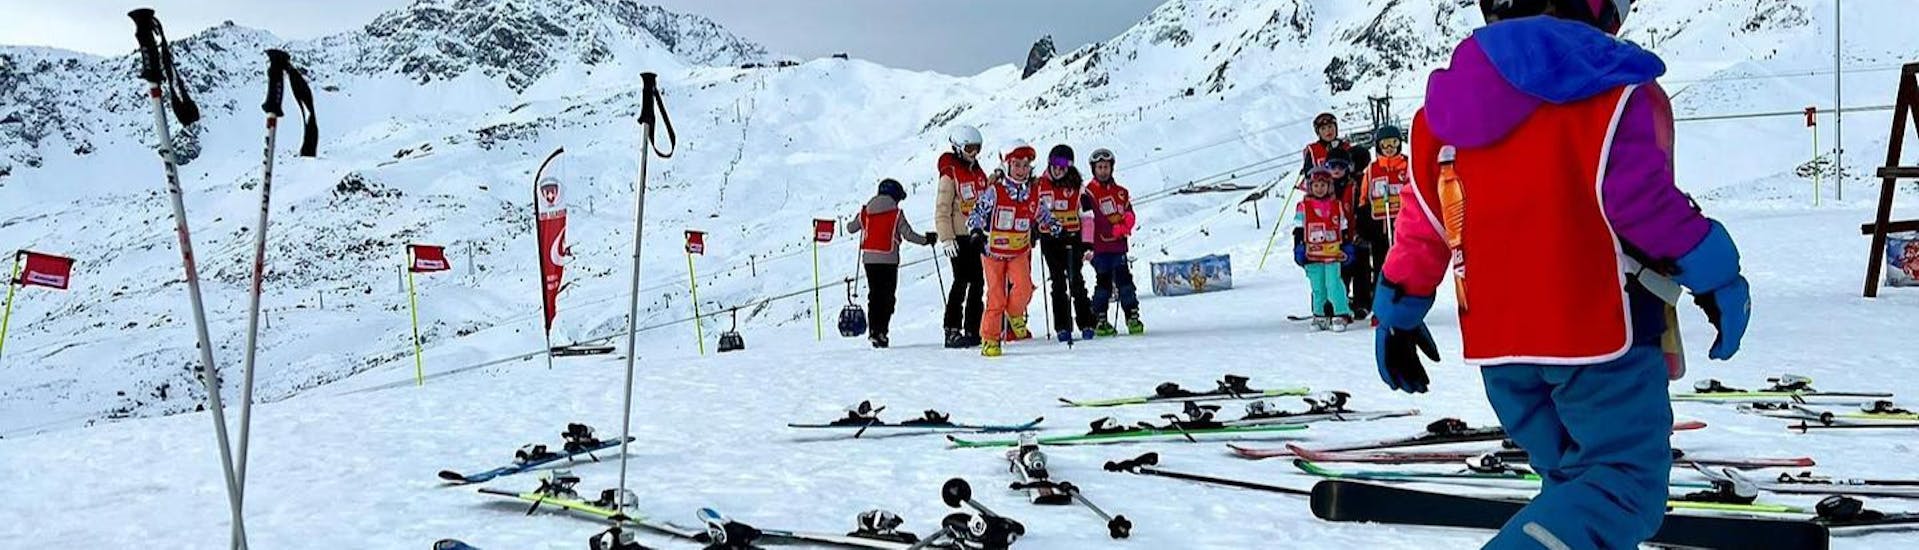 Skilessen voor kinderen vanaf 4 jaar.